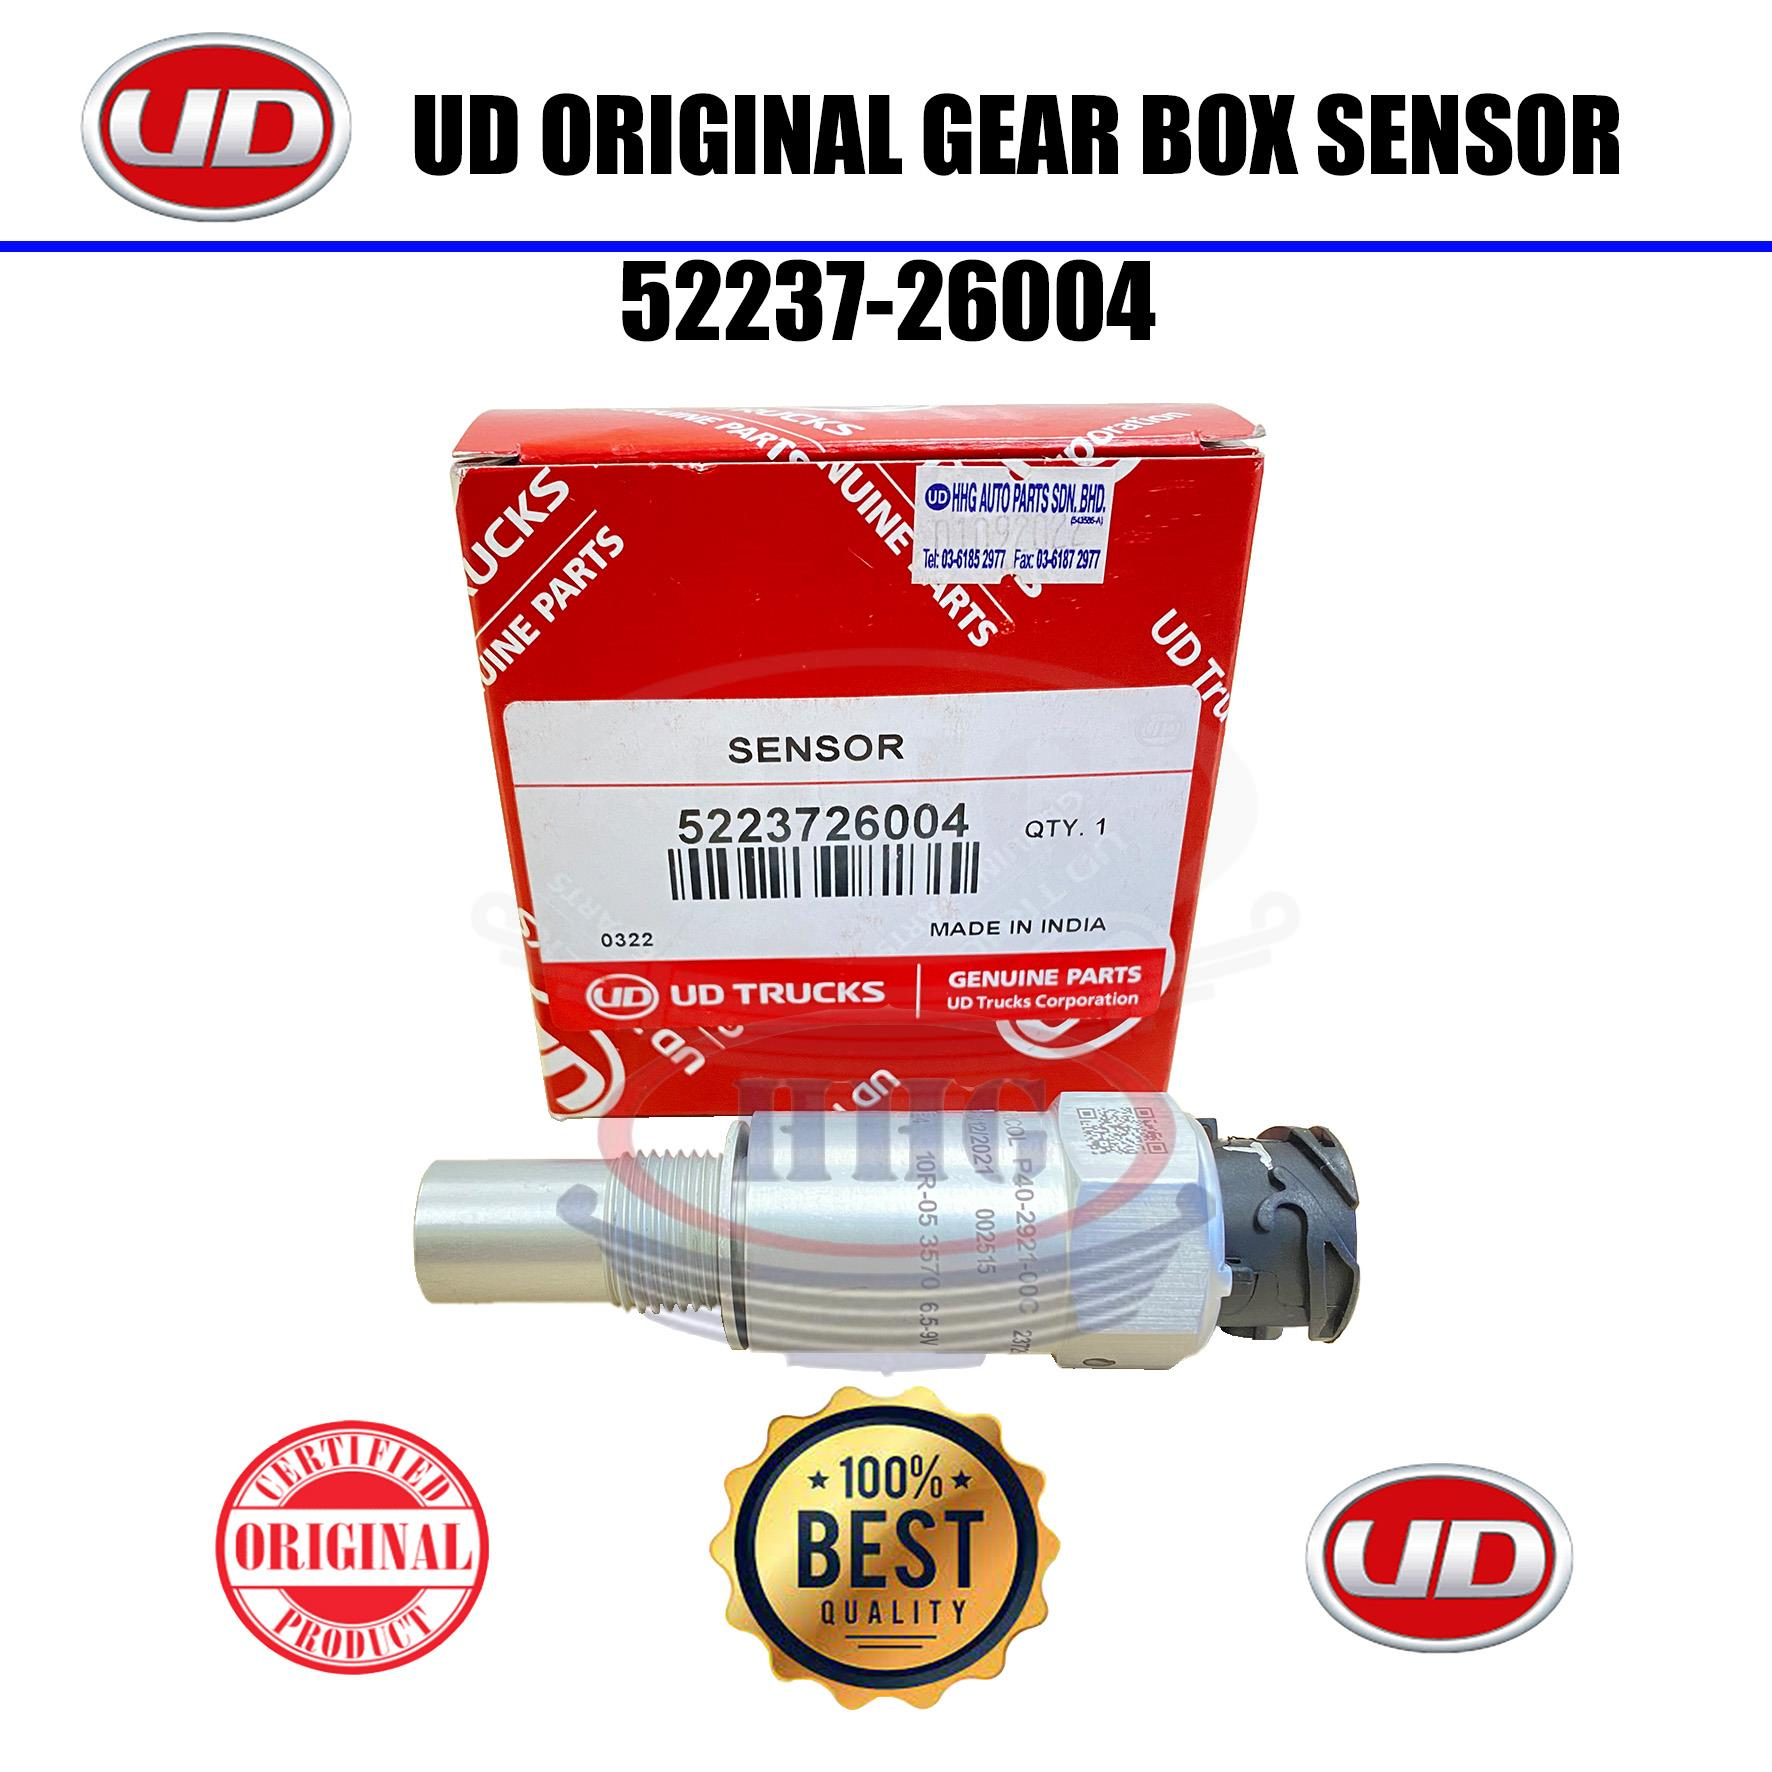 UD Original Quester GH11 Gear Box Sensor (52237-26004)